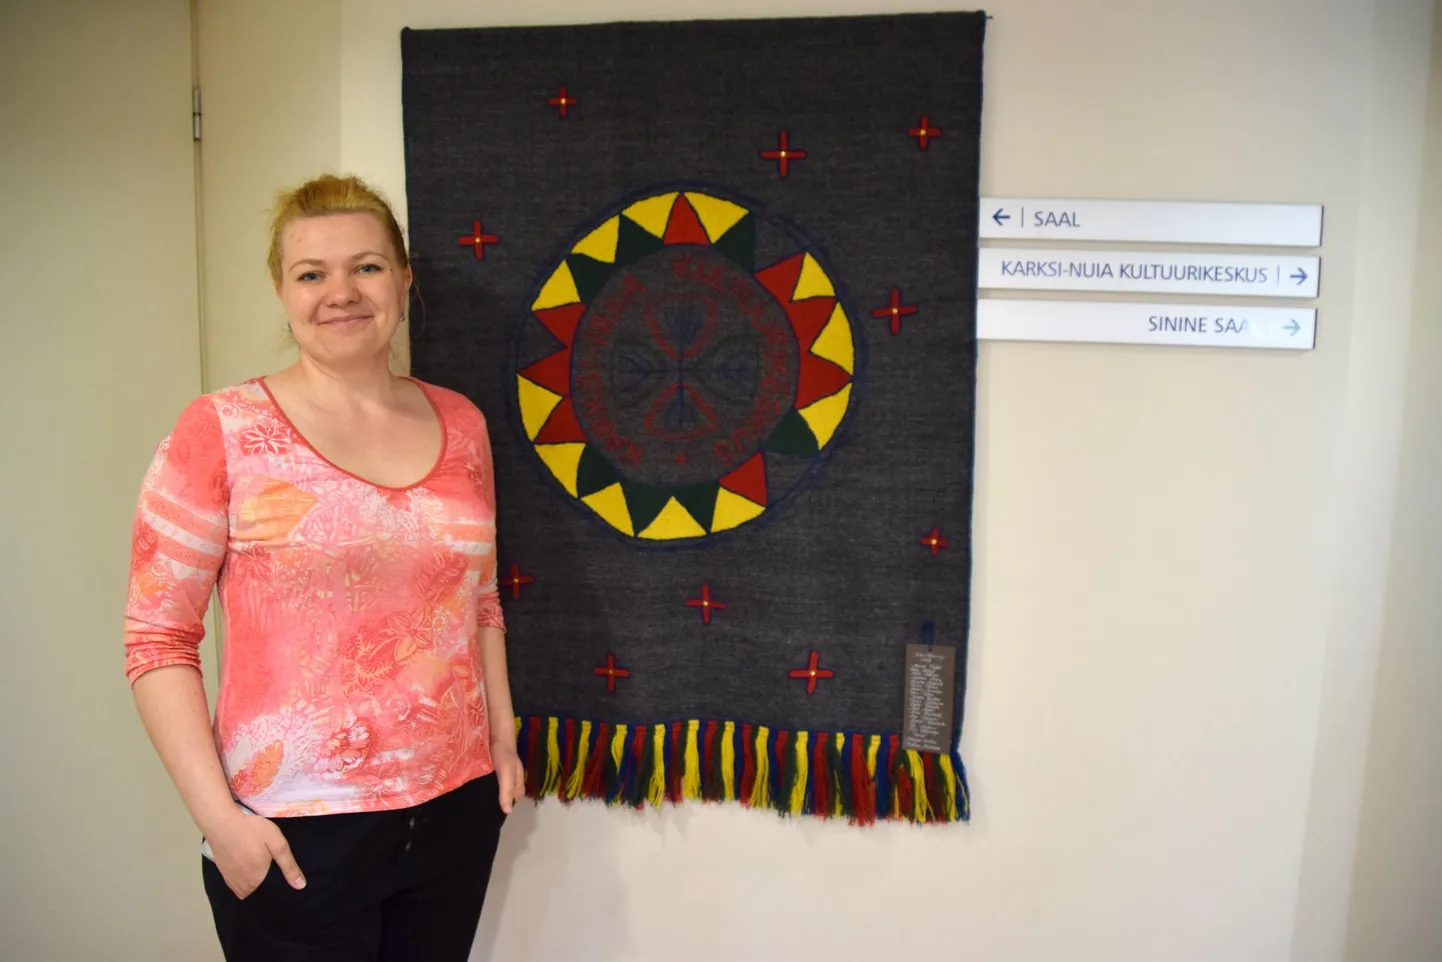 Esmaspäevast Karksi-Nuia kultuurikeskuse uue juhatajana tööle asunud Leana Liivson tõdes, et praegu on tal rohkem aega, et end töö detalidega kurssi viia.